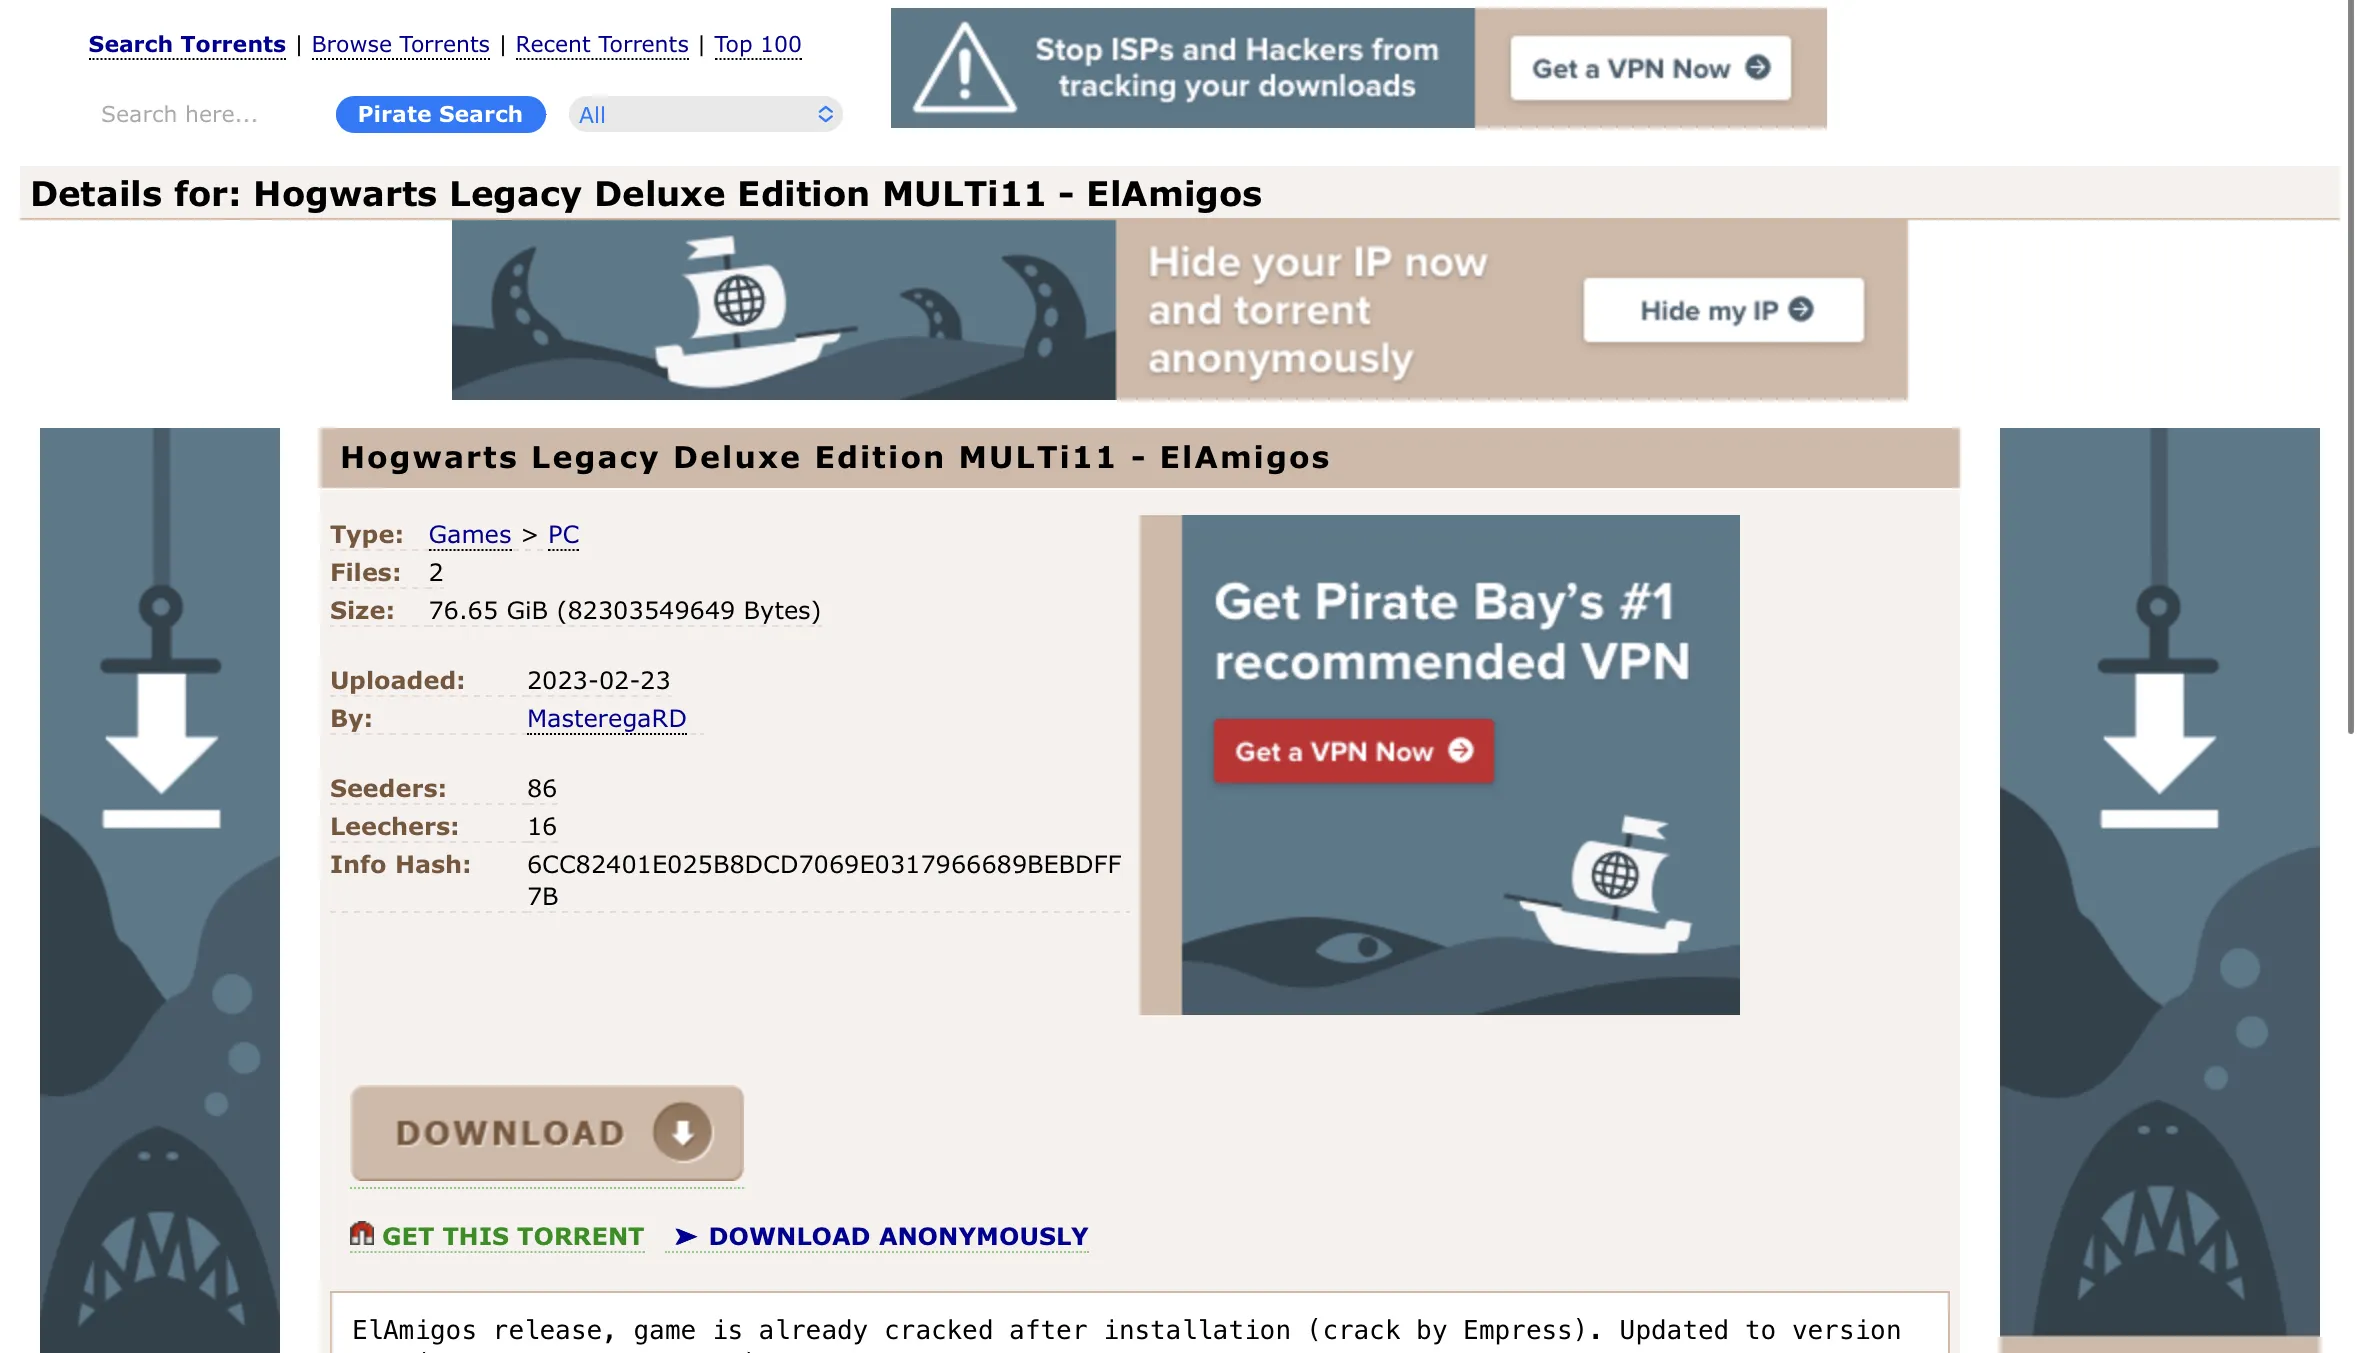 Um exemplo de jogo popular em um site pirata, cujos arquivos podem conter malware prejudicial